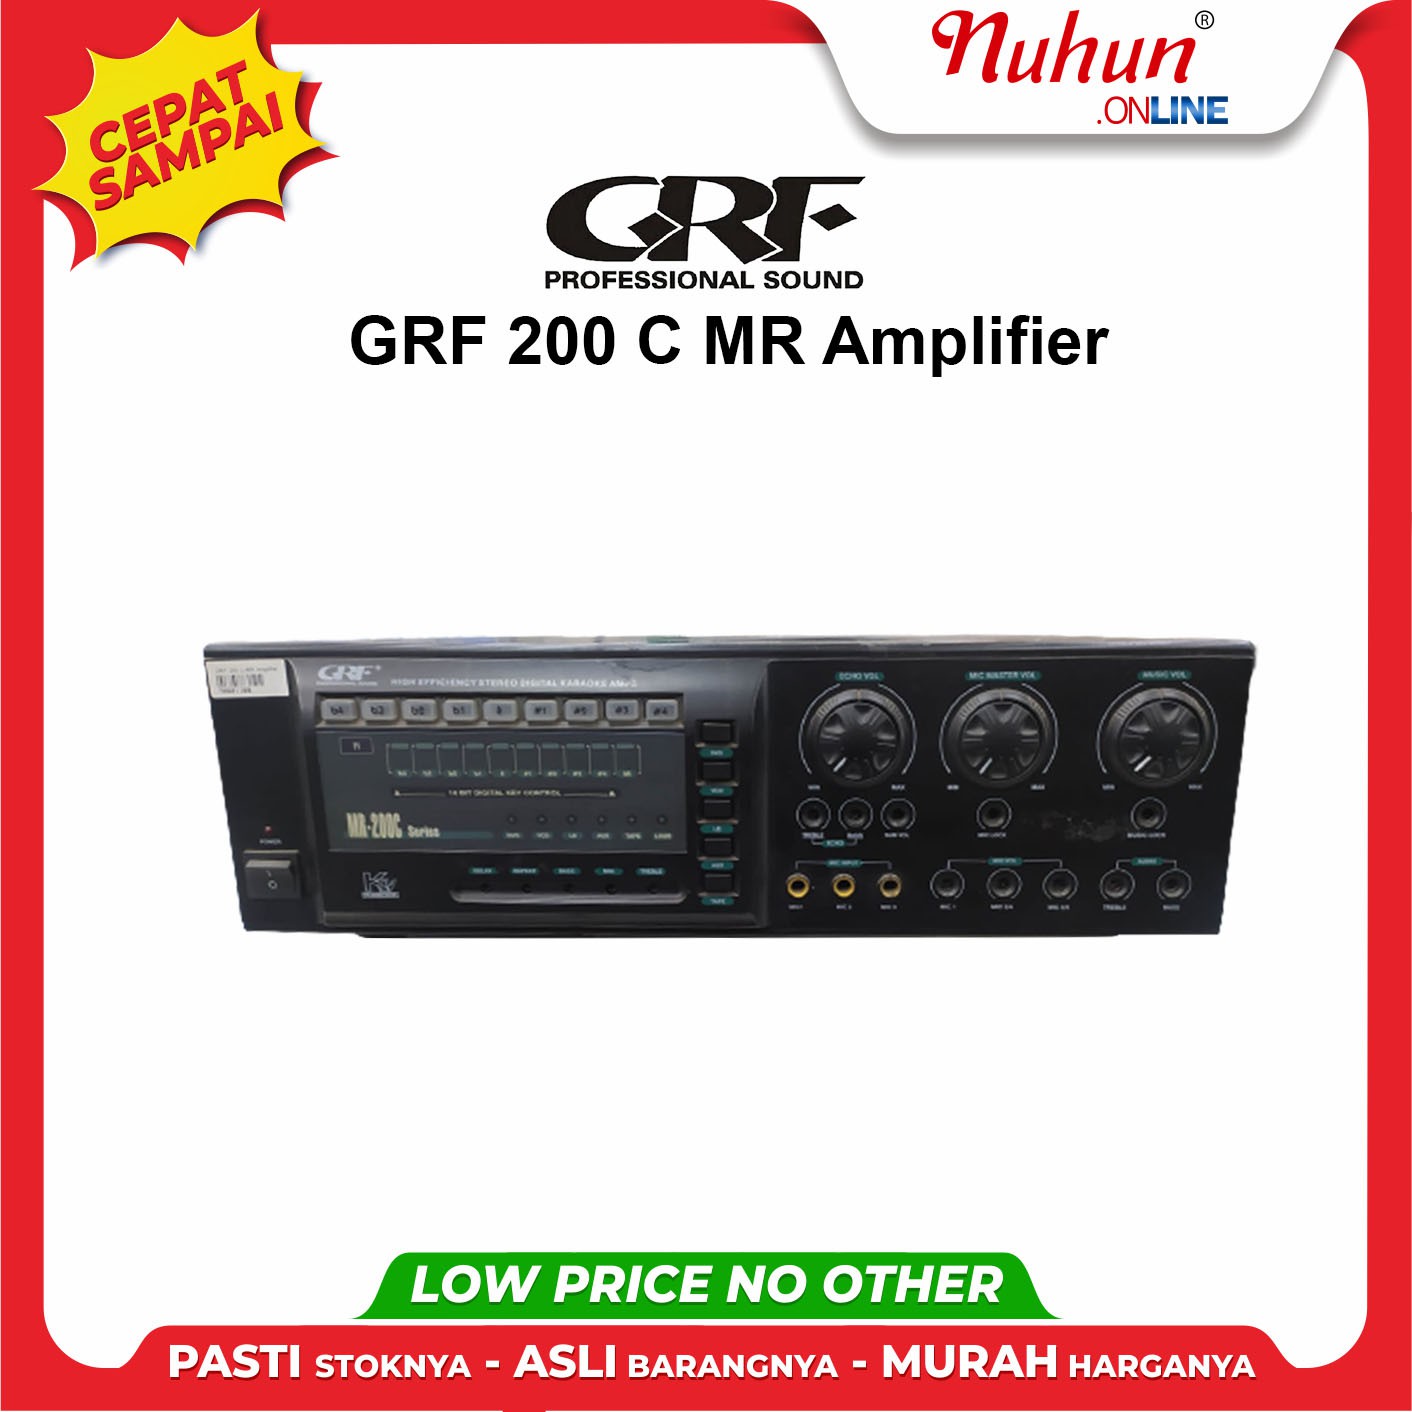 GRF 200 C MR Amplifier